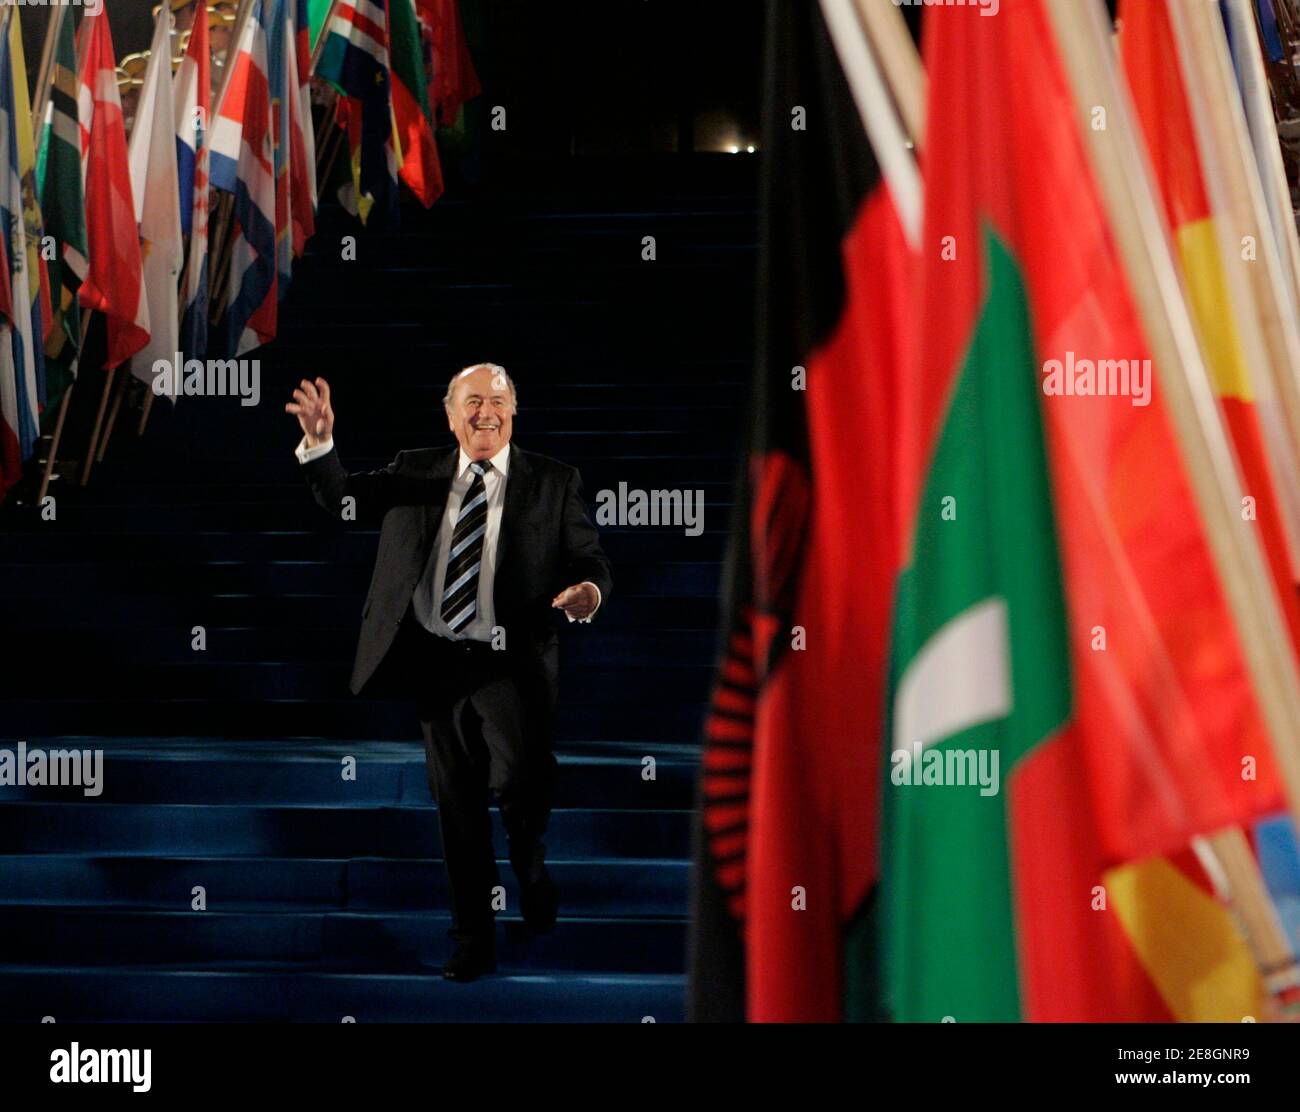 El presidente de la FIFA Sepp Blatter se dirigió a los medios de comunicación después de abandonar la ceremonia inaugural del 58º Congreso de la FIFA en la Ópera de Sydney el 29 de mayo de 2008. REUTERS/will Burgess (AUSTRALIA) Foto de stock